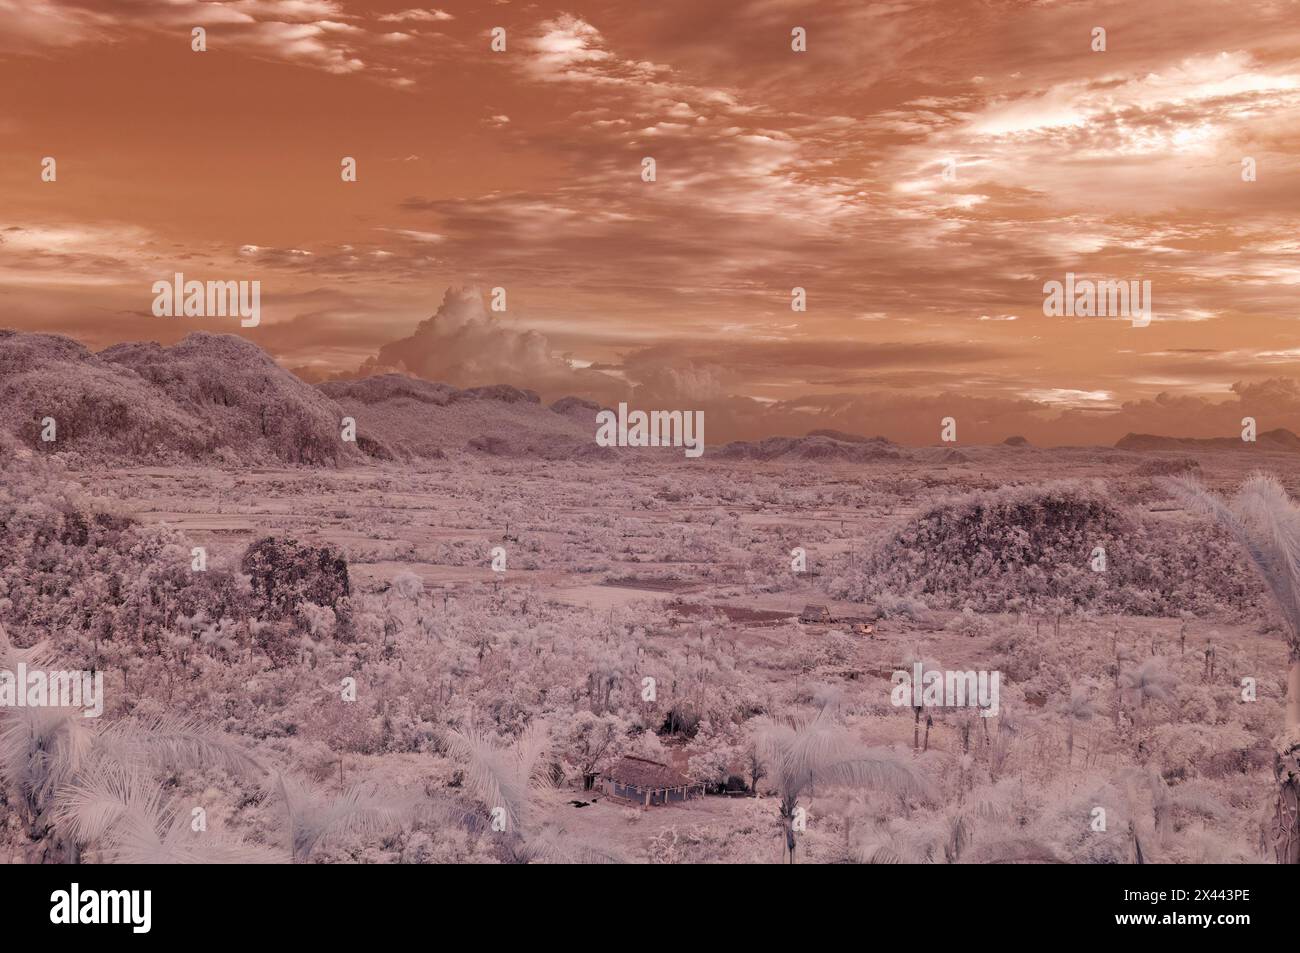 Une image de paysage infrarouge prise en regardant à travers la vallée de Vinales au paysage dramatique du Karst. Près de Vinales, Cuba Banque D'Images